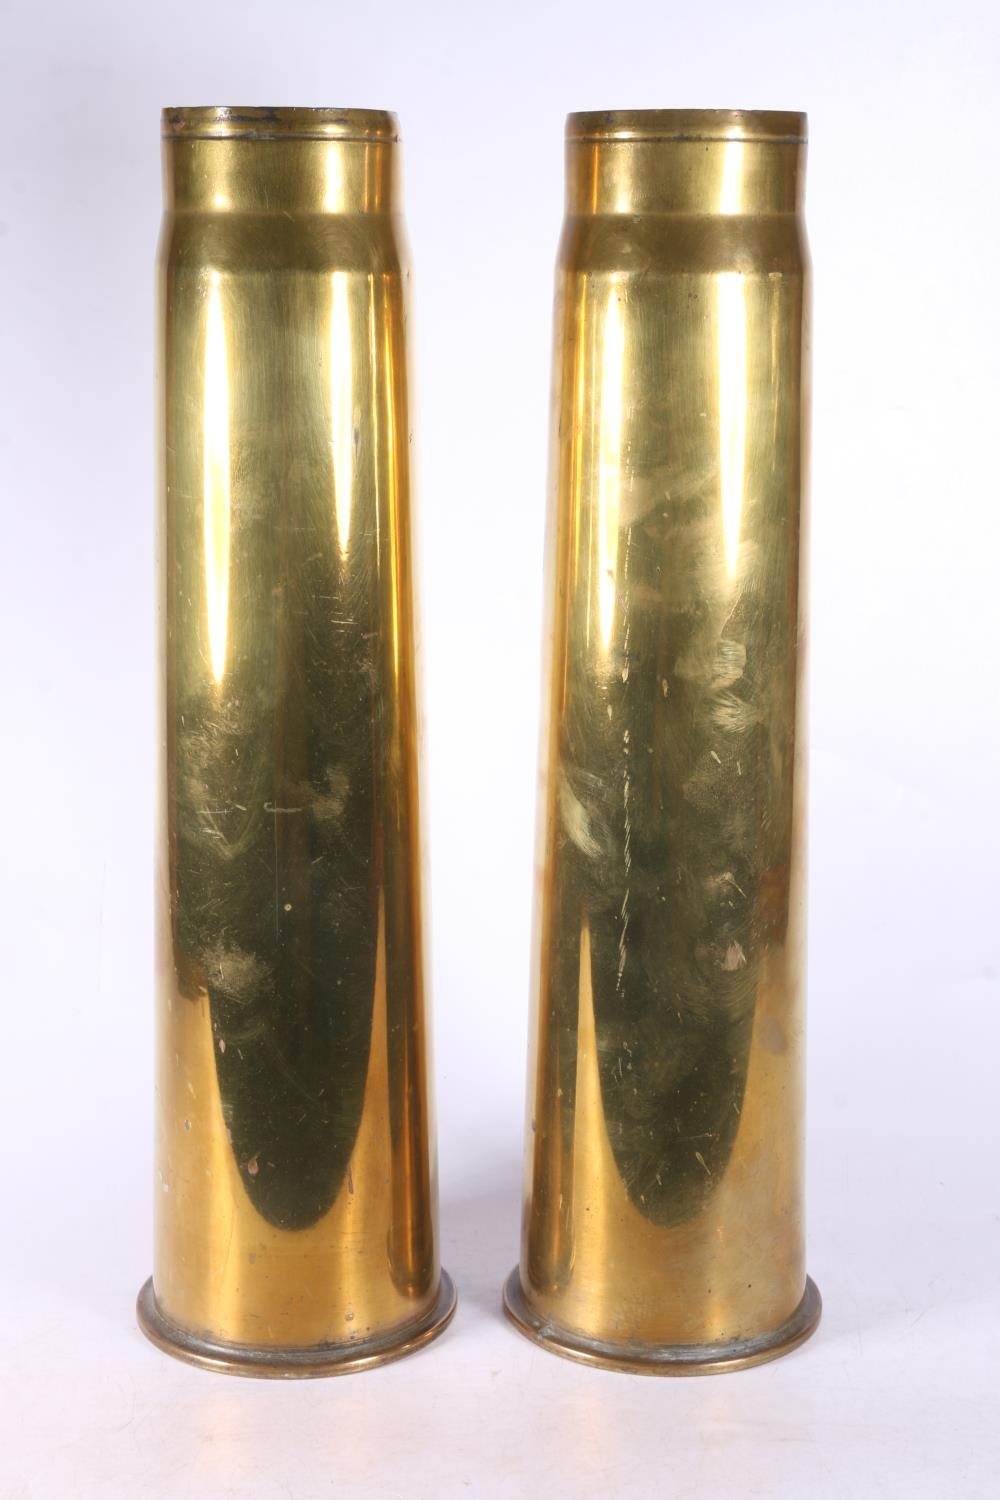 Pair of WWII brass artillery shell casings, 42cm tall.